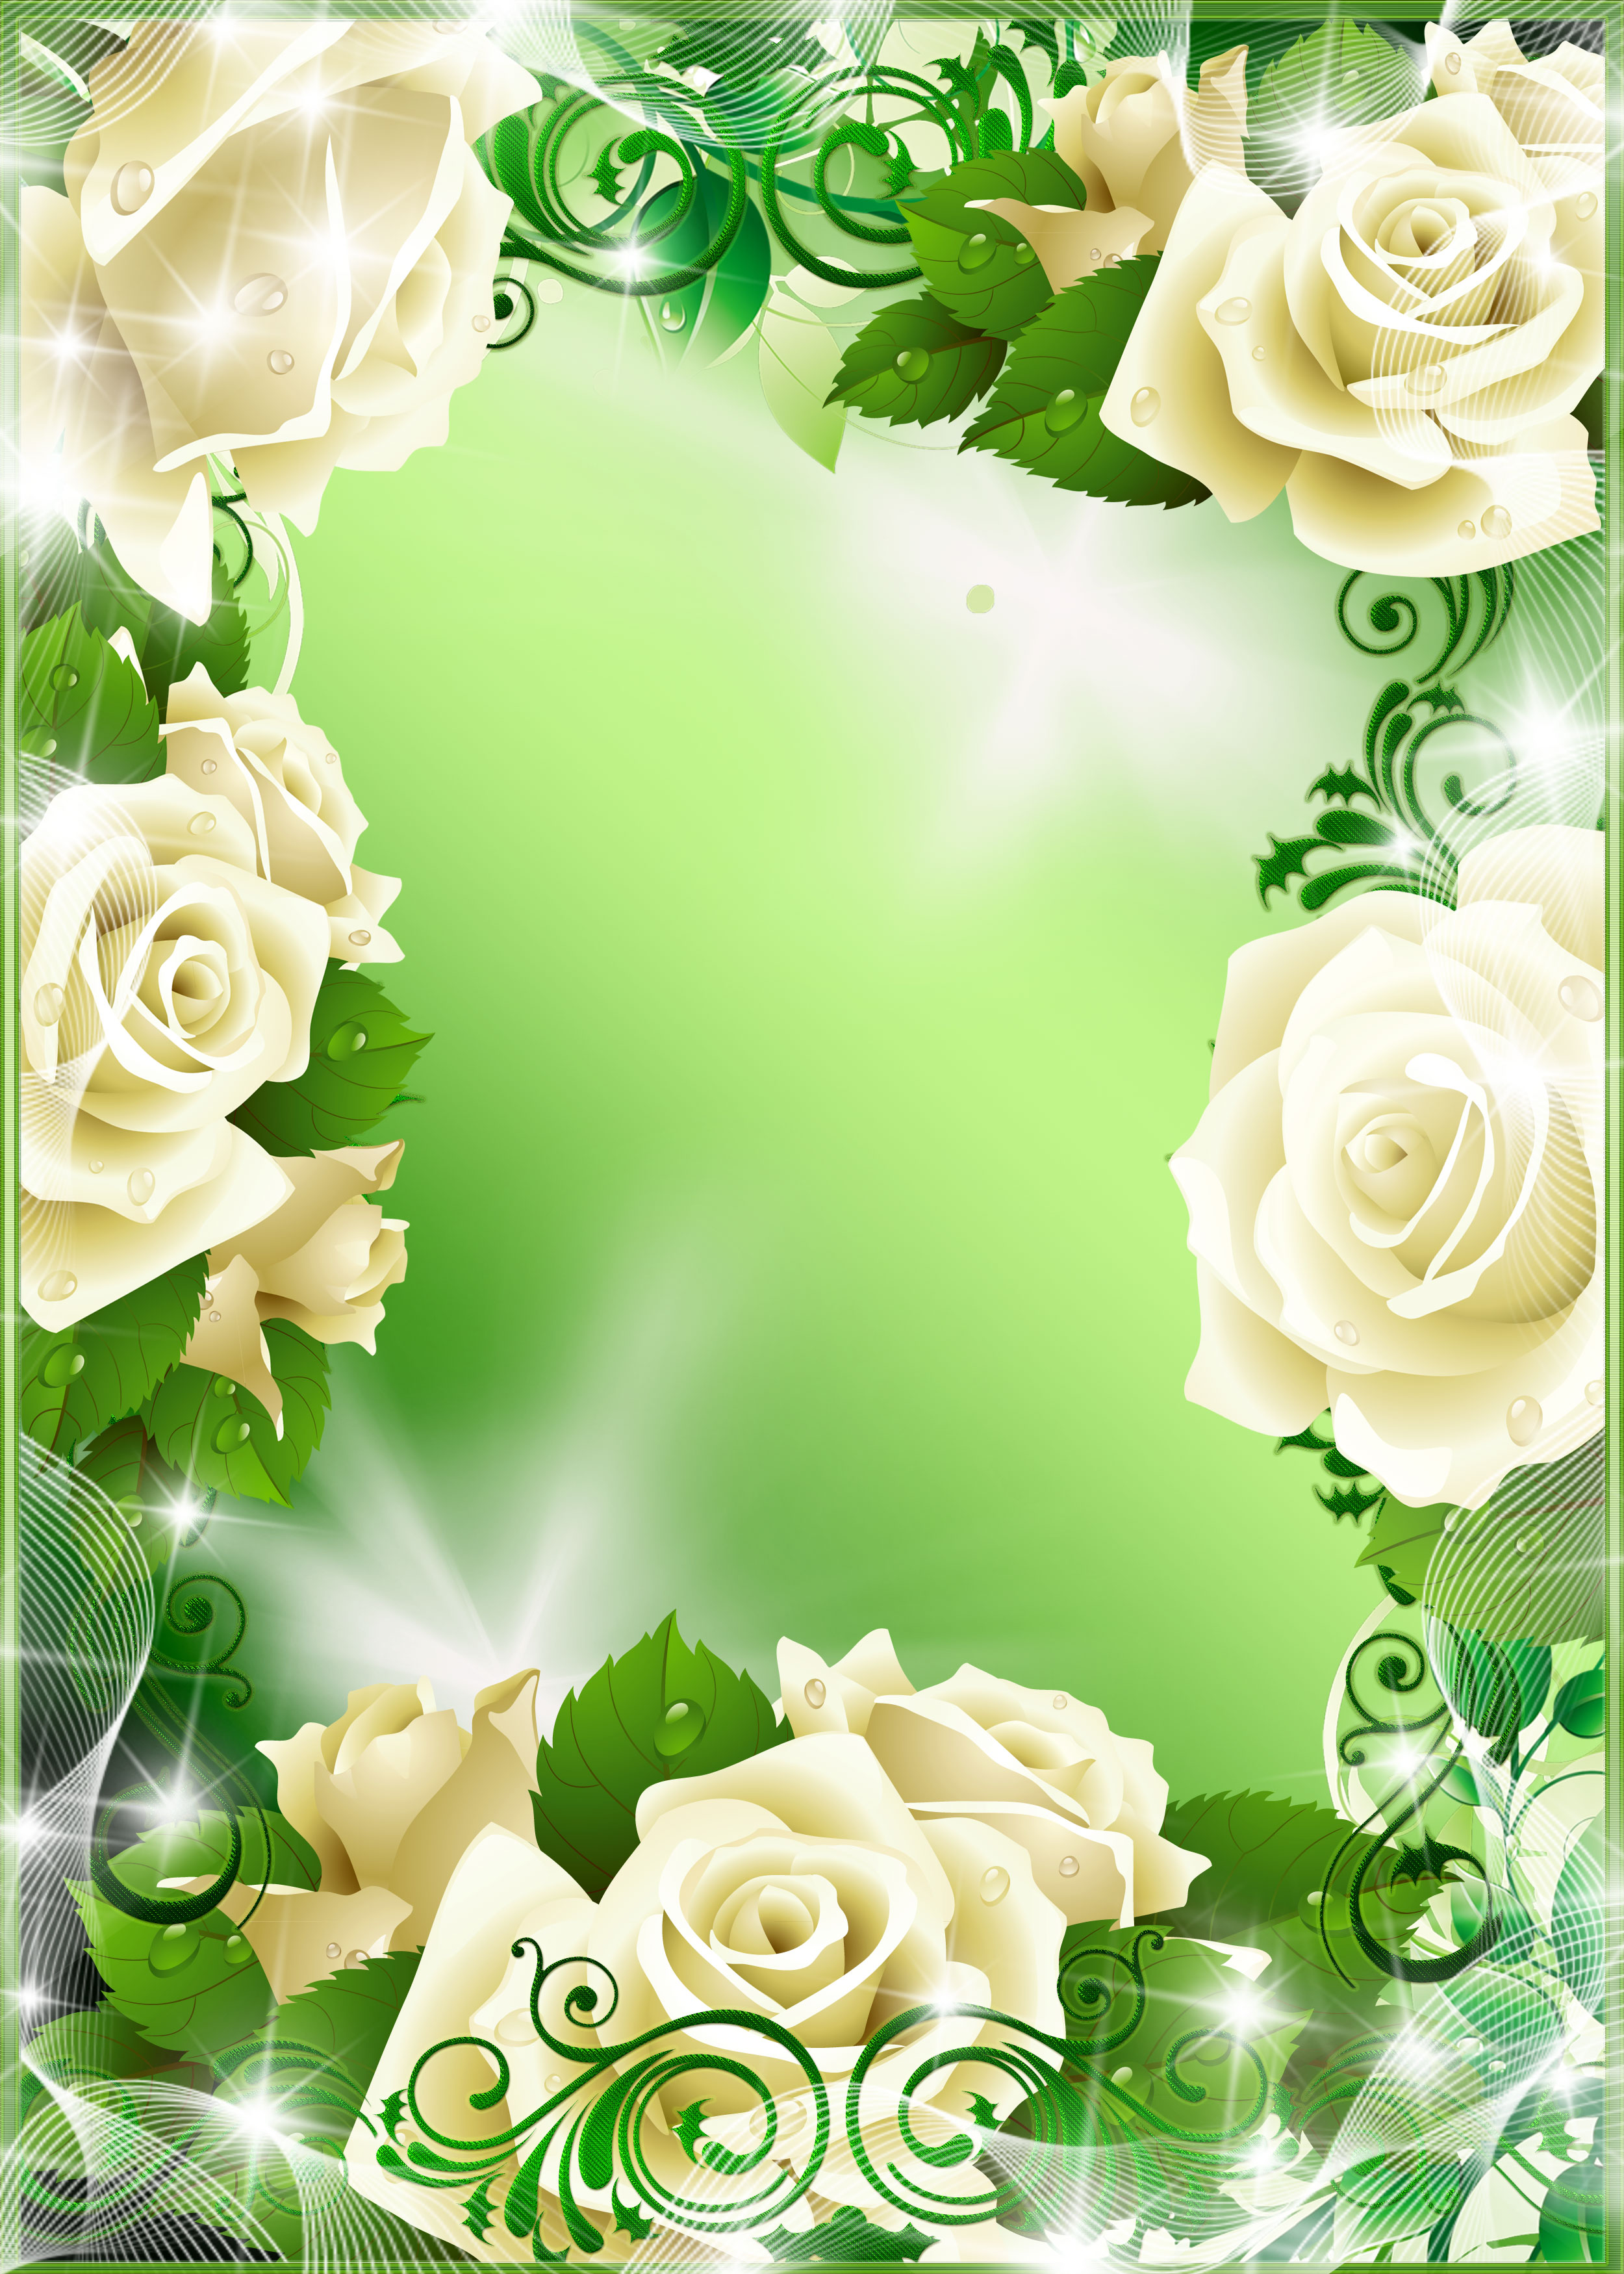 壁紙 背景イラスト 花のフレーム 外枠 No 025 白バラ 光彩 緑